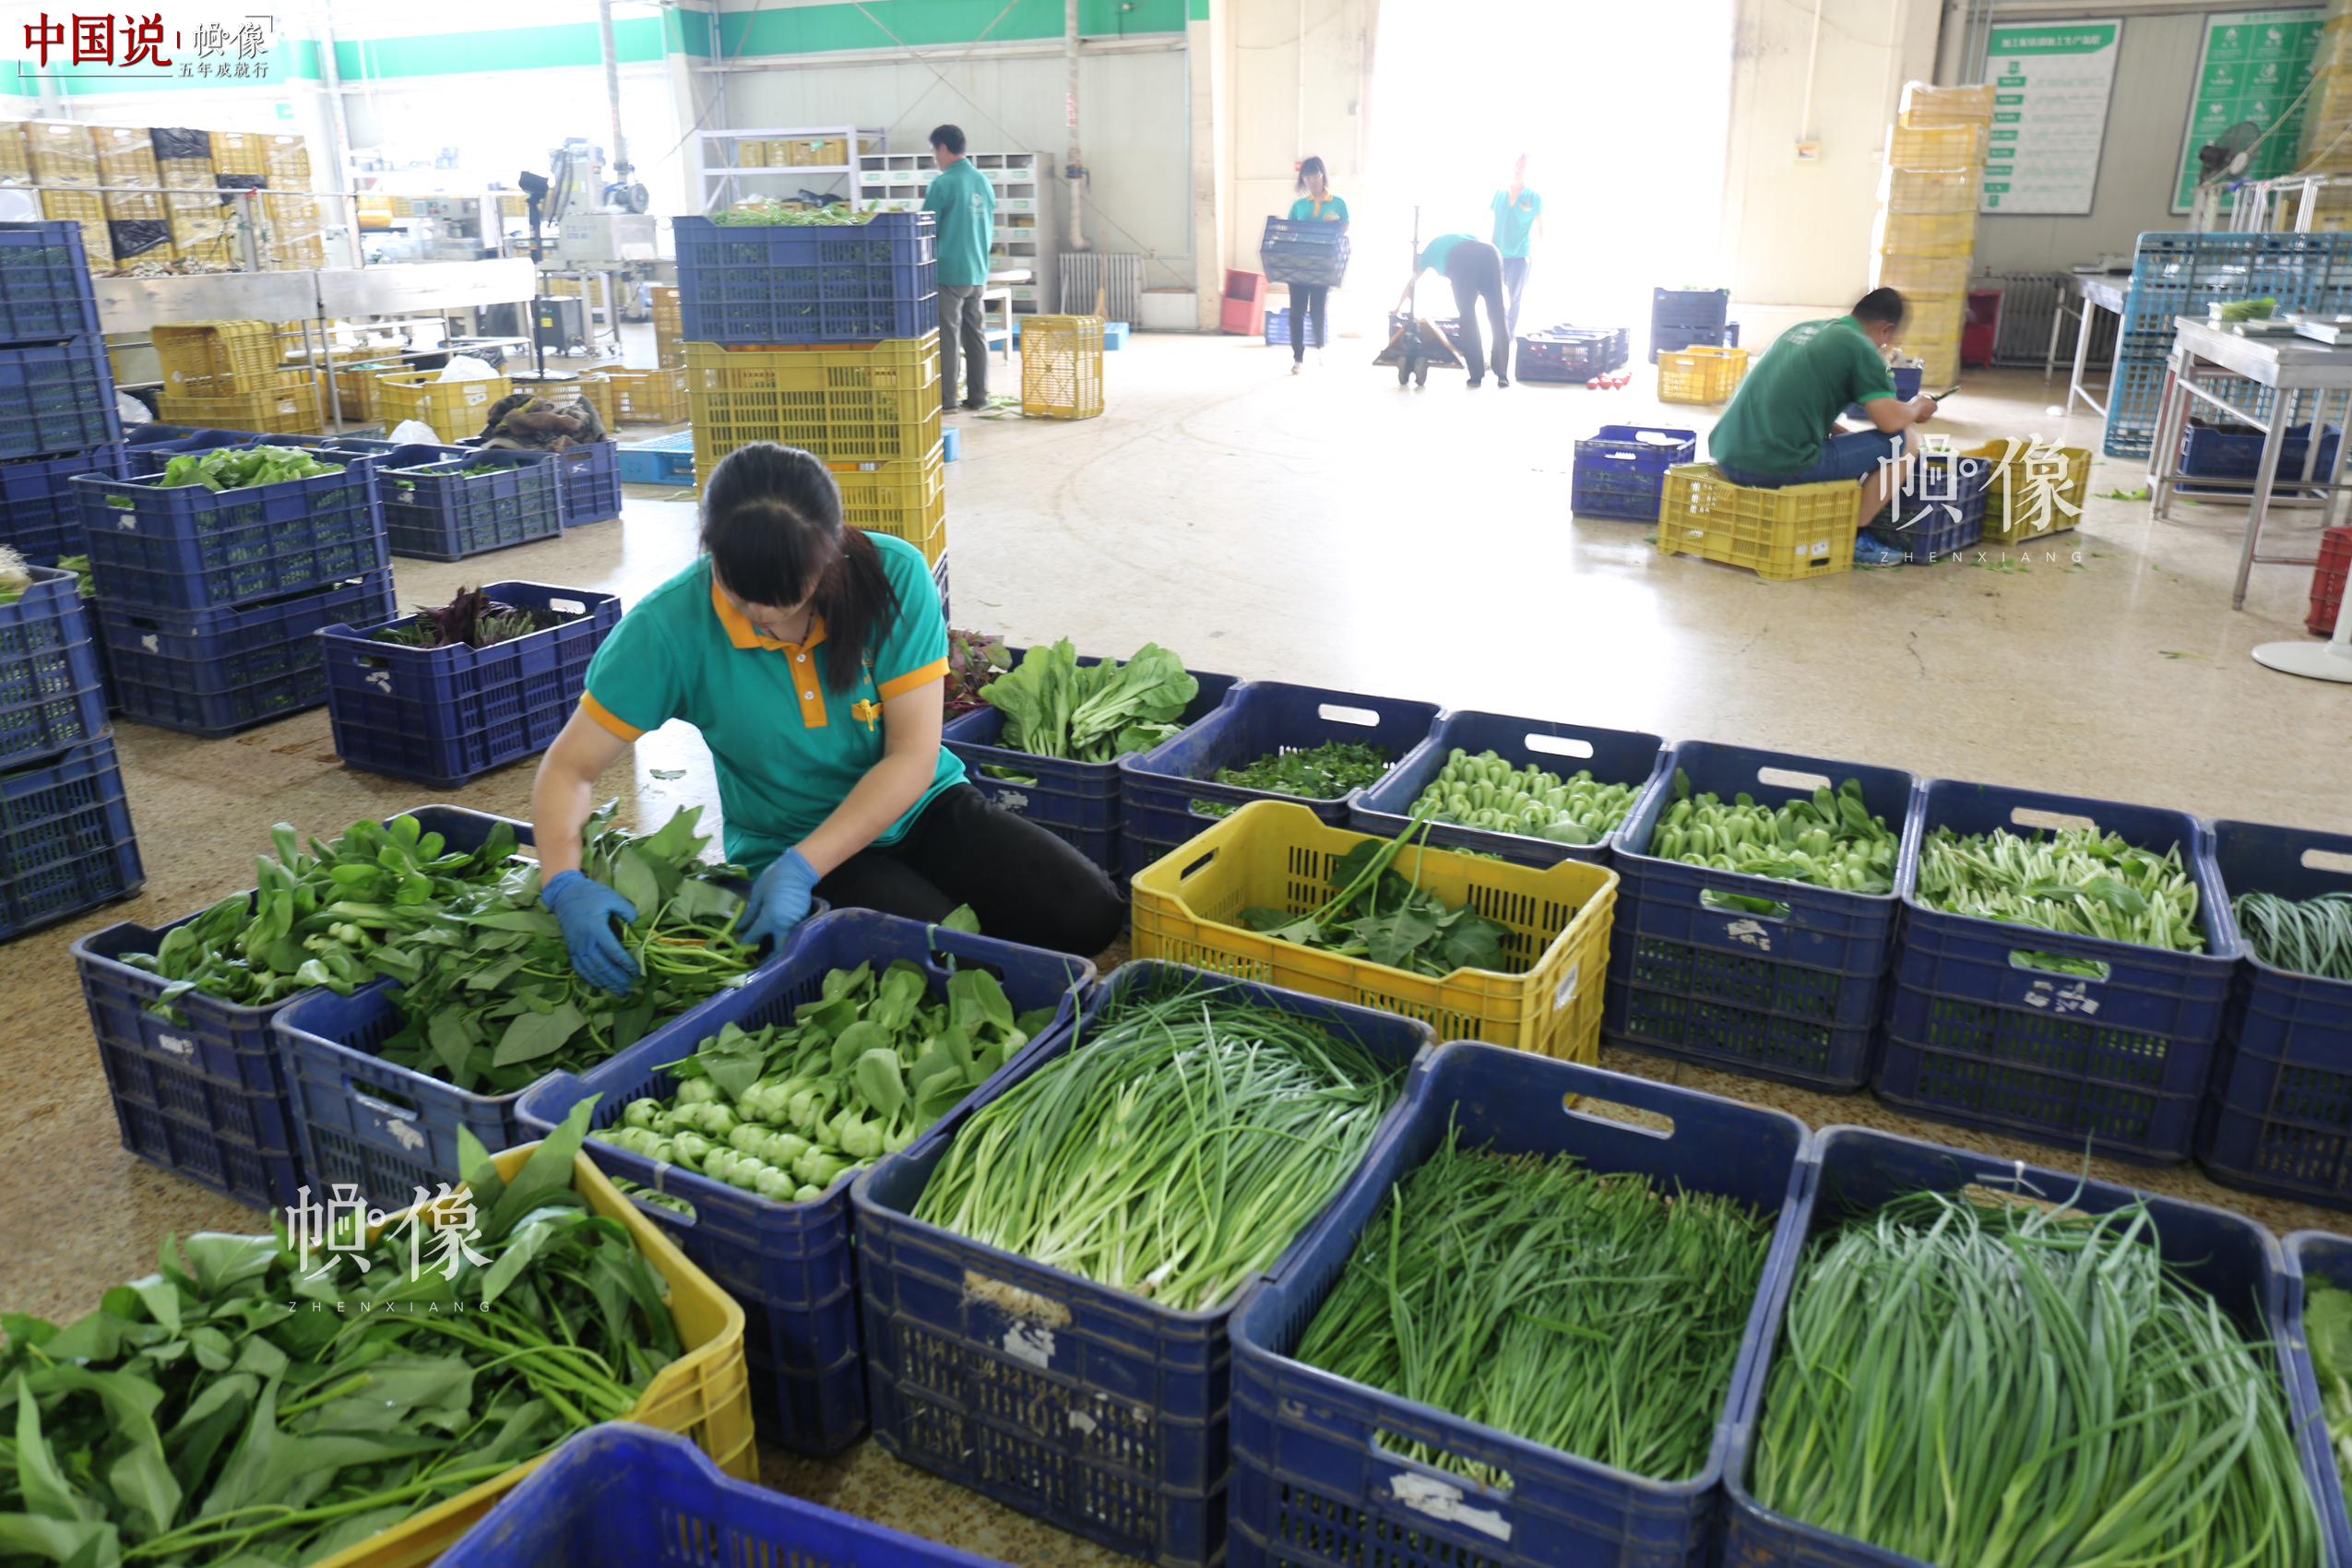 北京天安农业小汤山特菜基地员工对蔬菜进行包装处理。中国网记者 赵超 摄